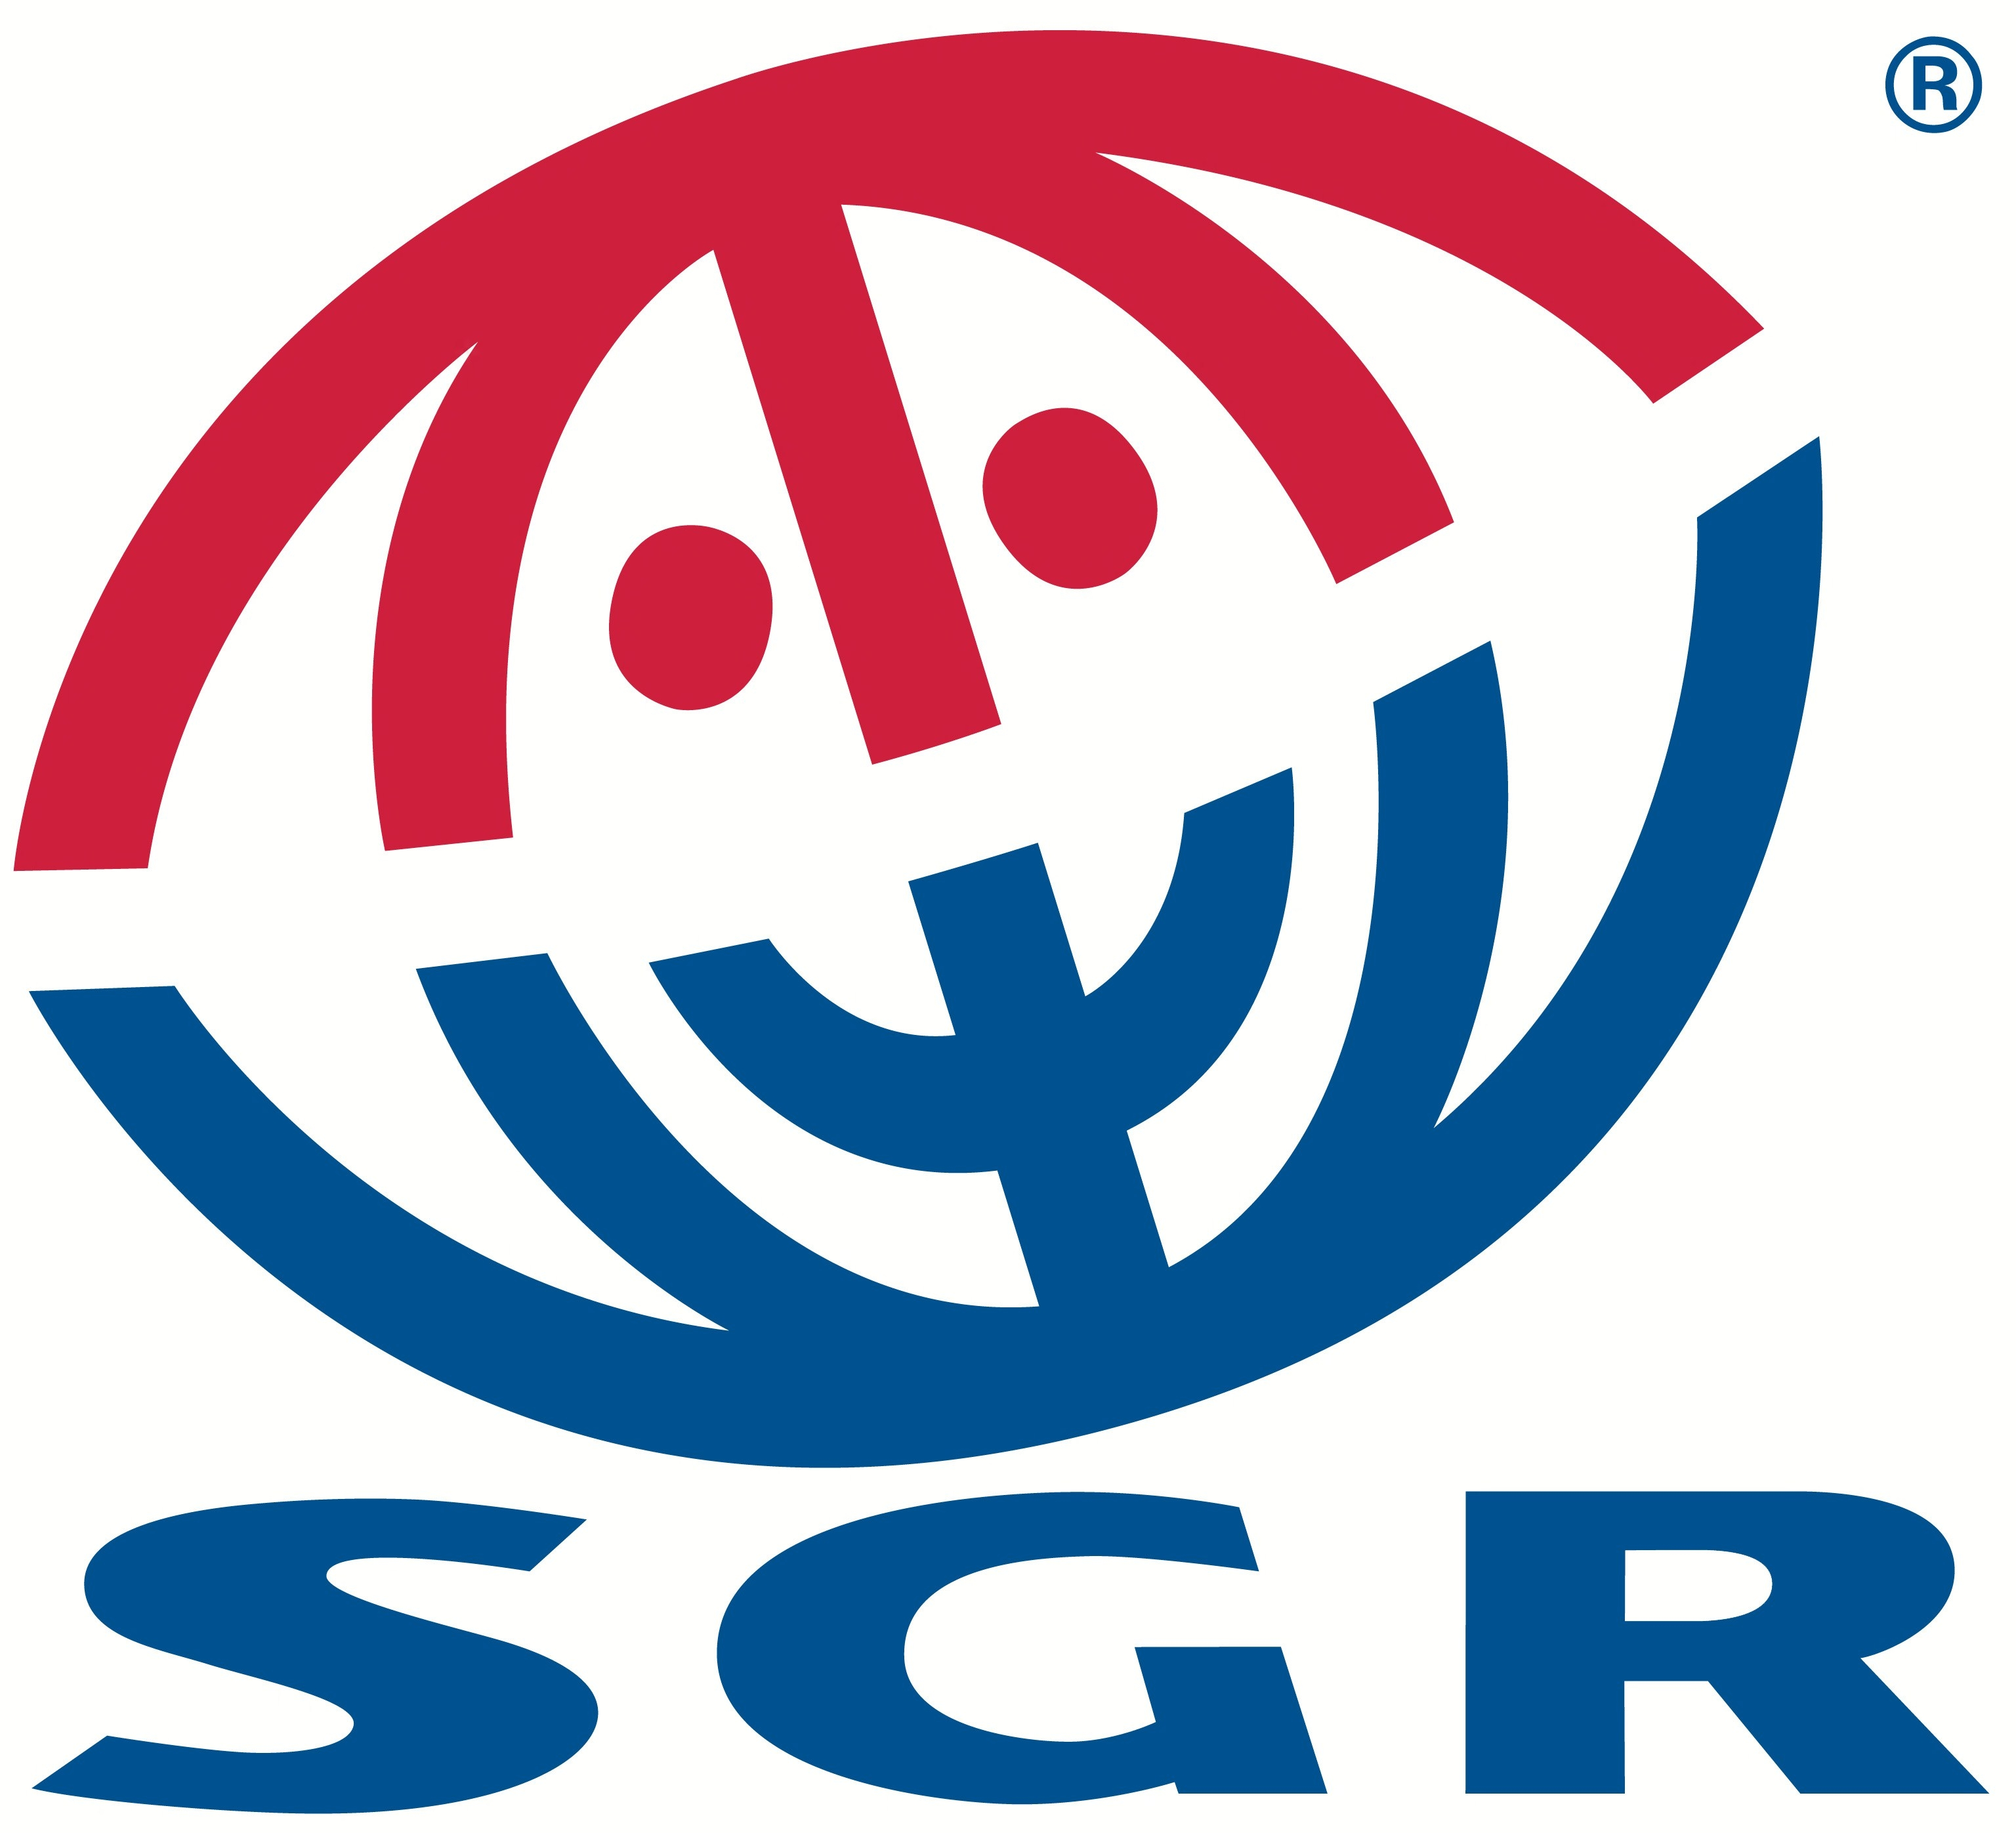 SGR: WintersportCanadaAmerika is lid van Stichting Garantiefonds Reisgelden